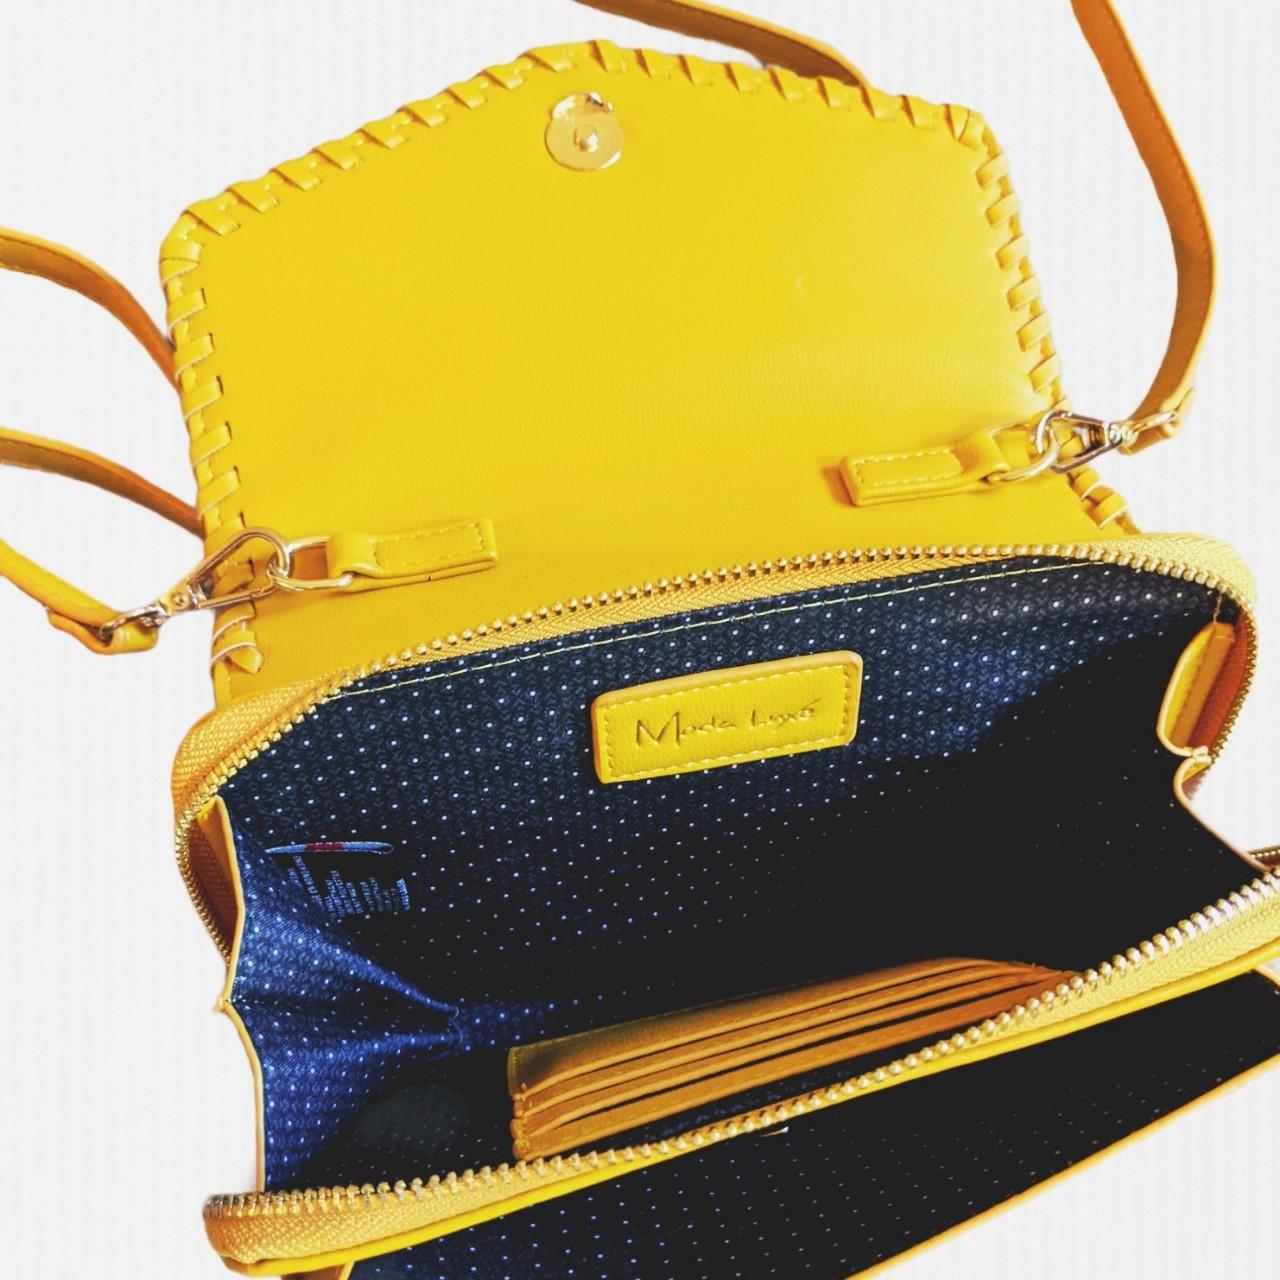 Yellow convertible handbag from Moda Luxe New w/o - Depop